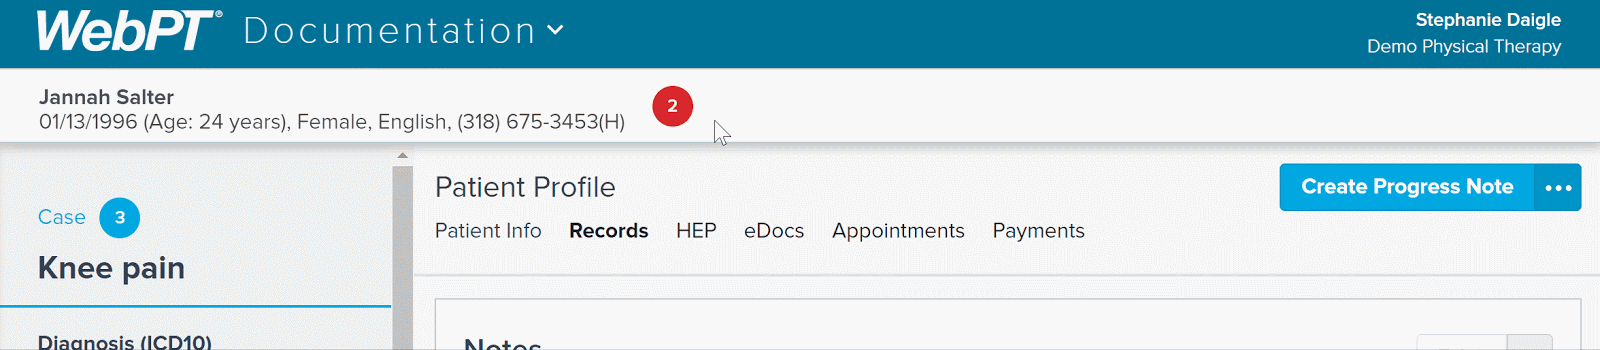 EMR_2.0_Patient Profile_Alerts Drawer_Plan of Care